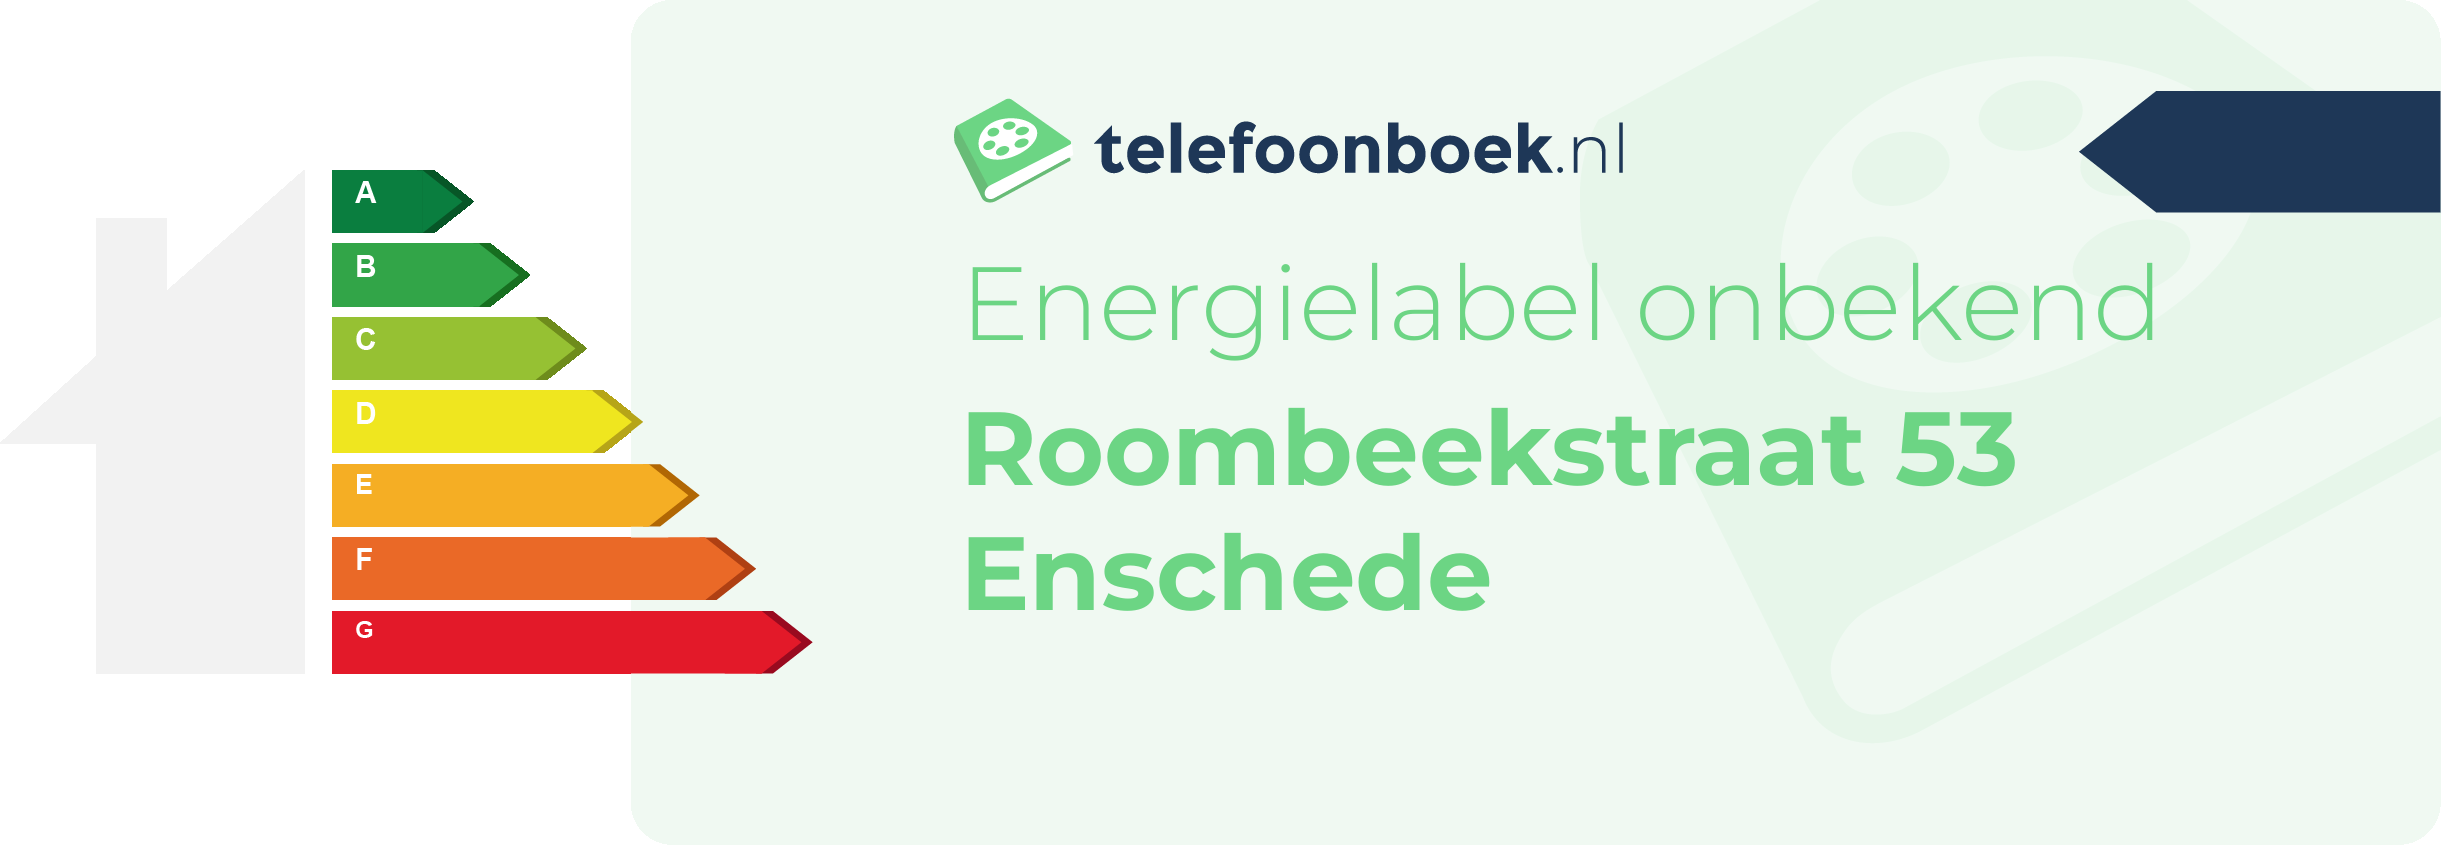 Energielabel Roombeekstraat 53 Enschede